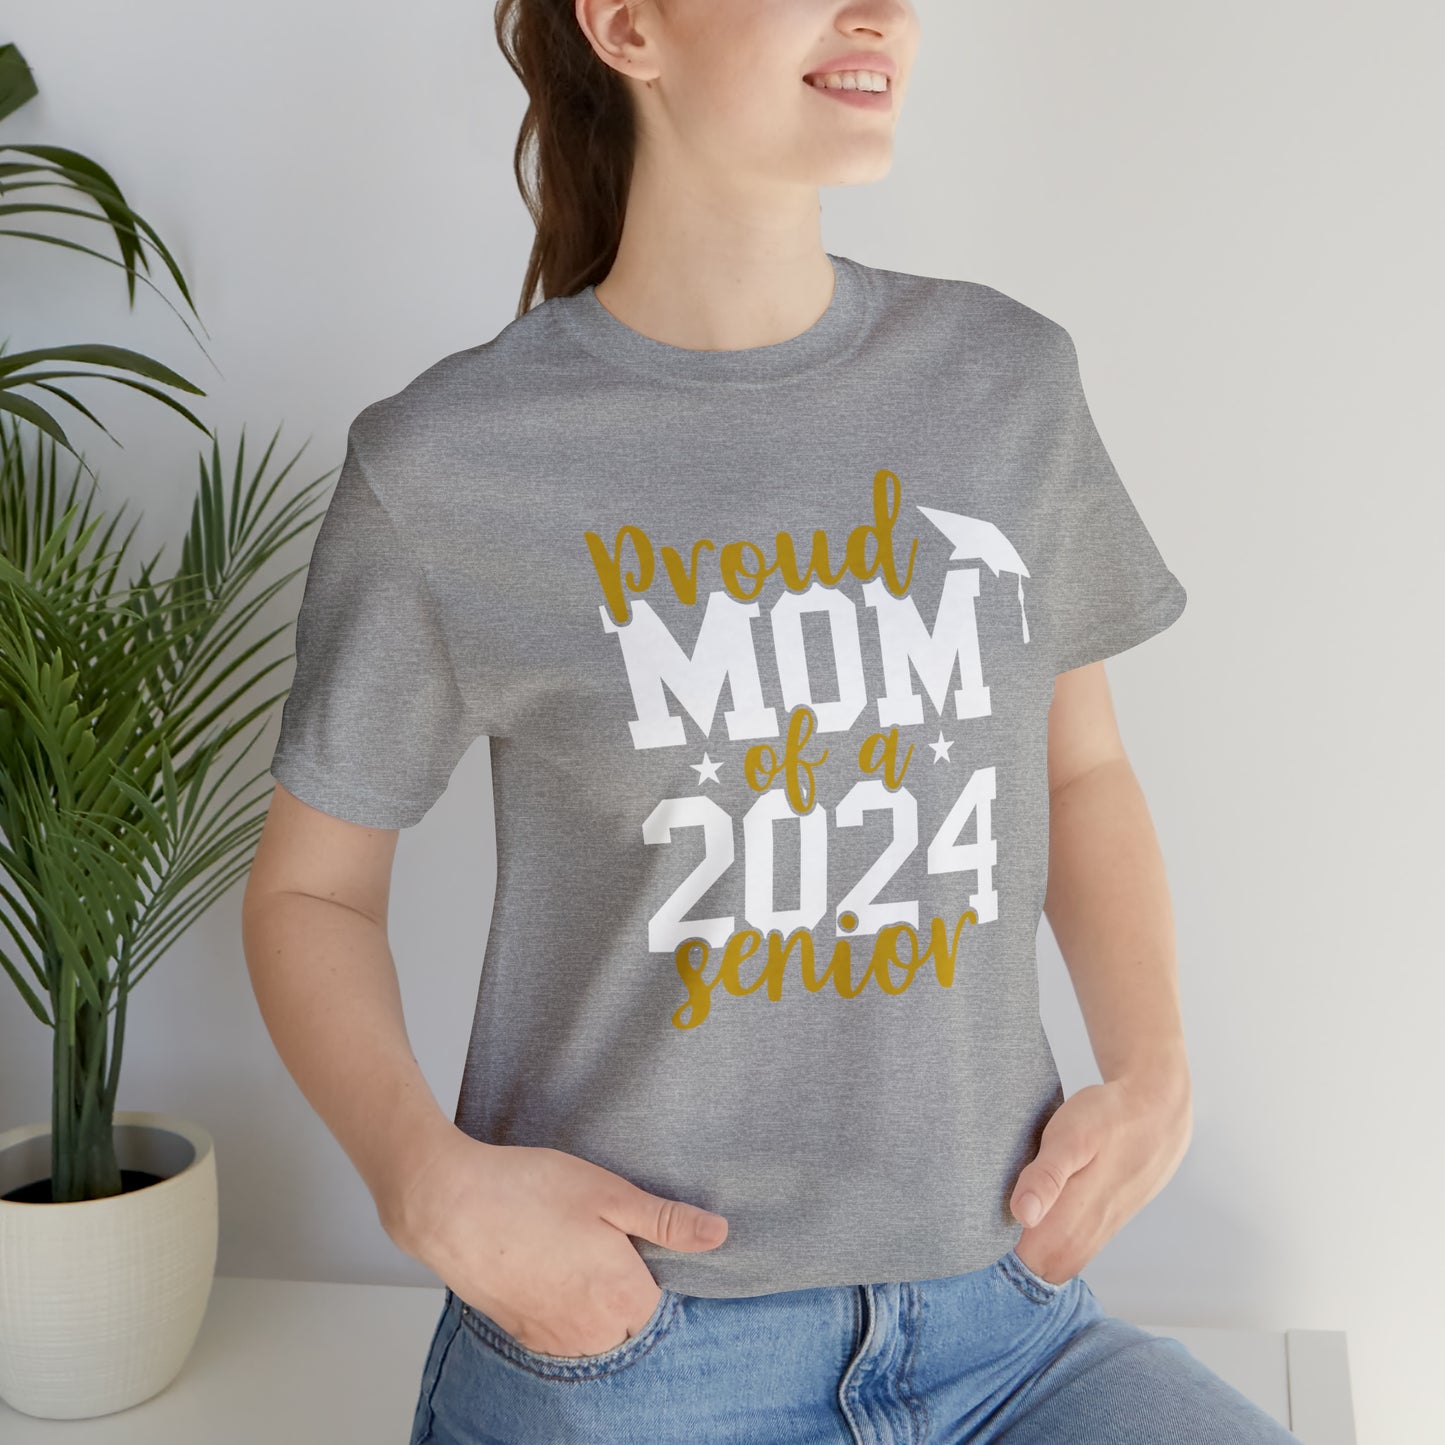 2024 Mom Tee - Bella Canvas